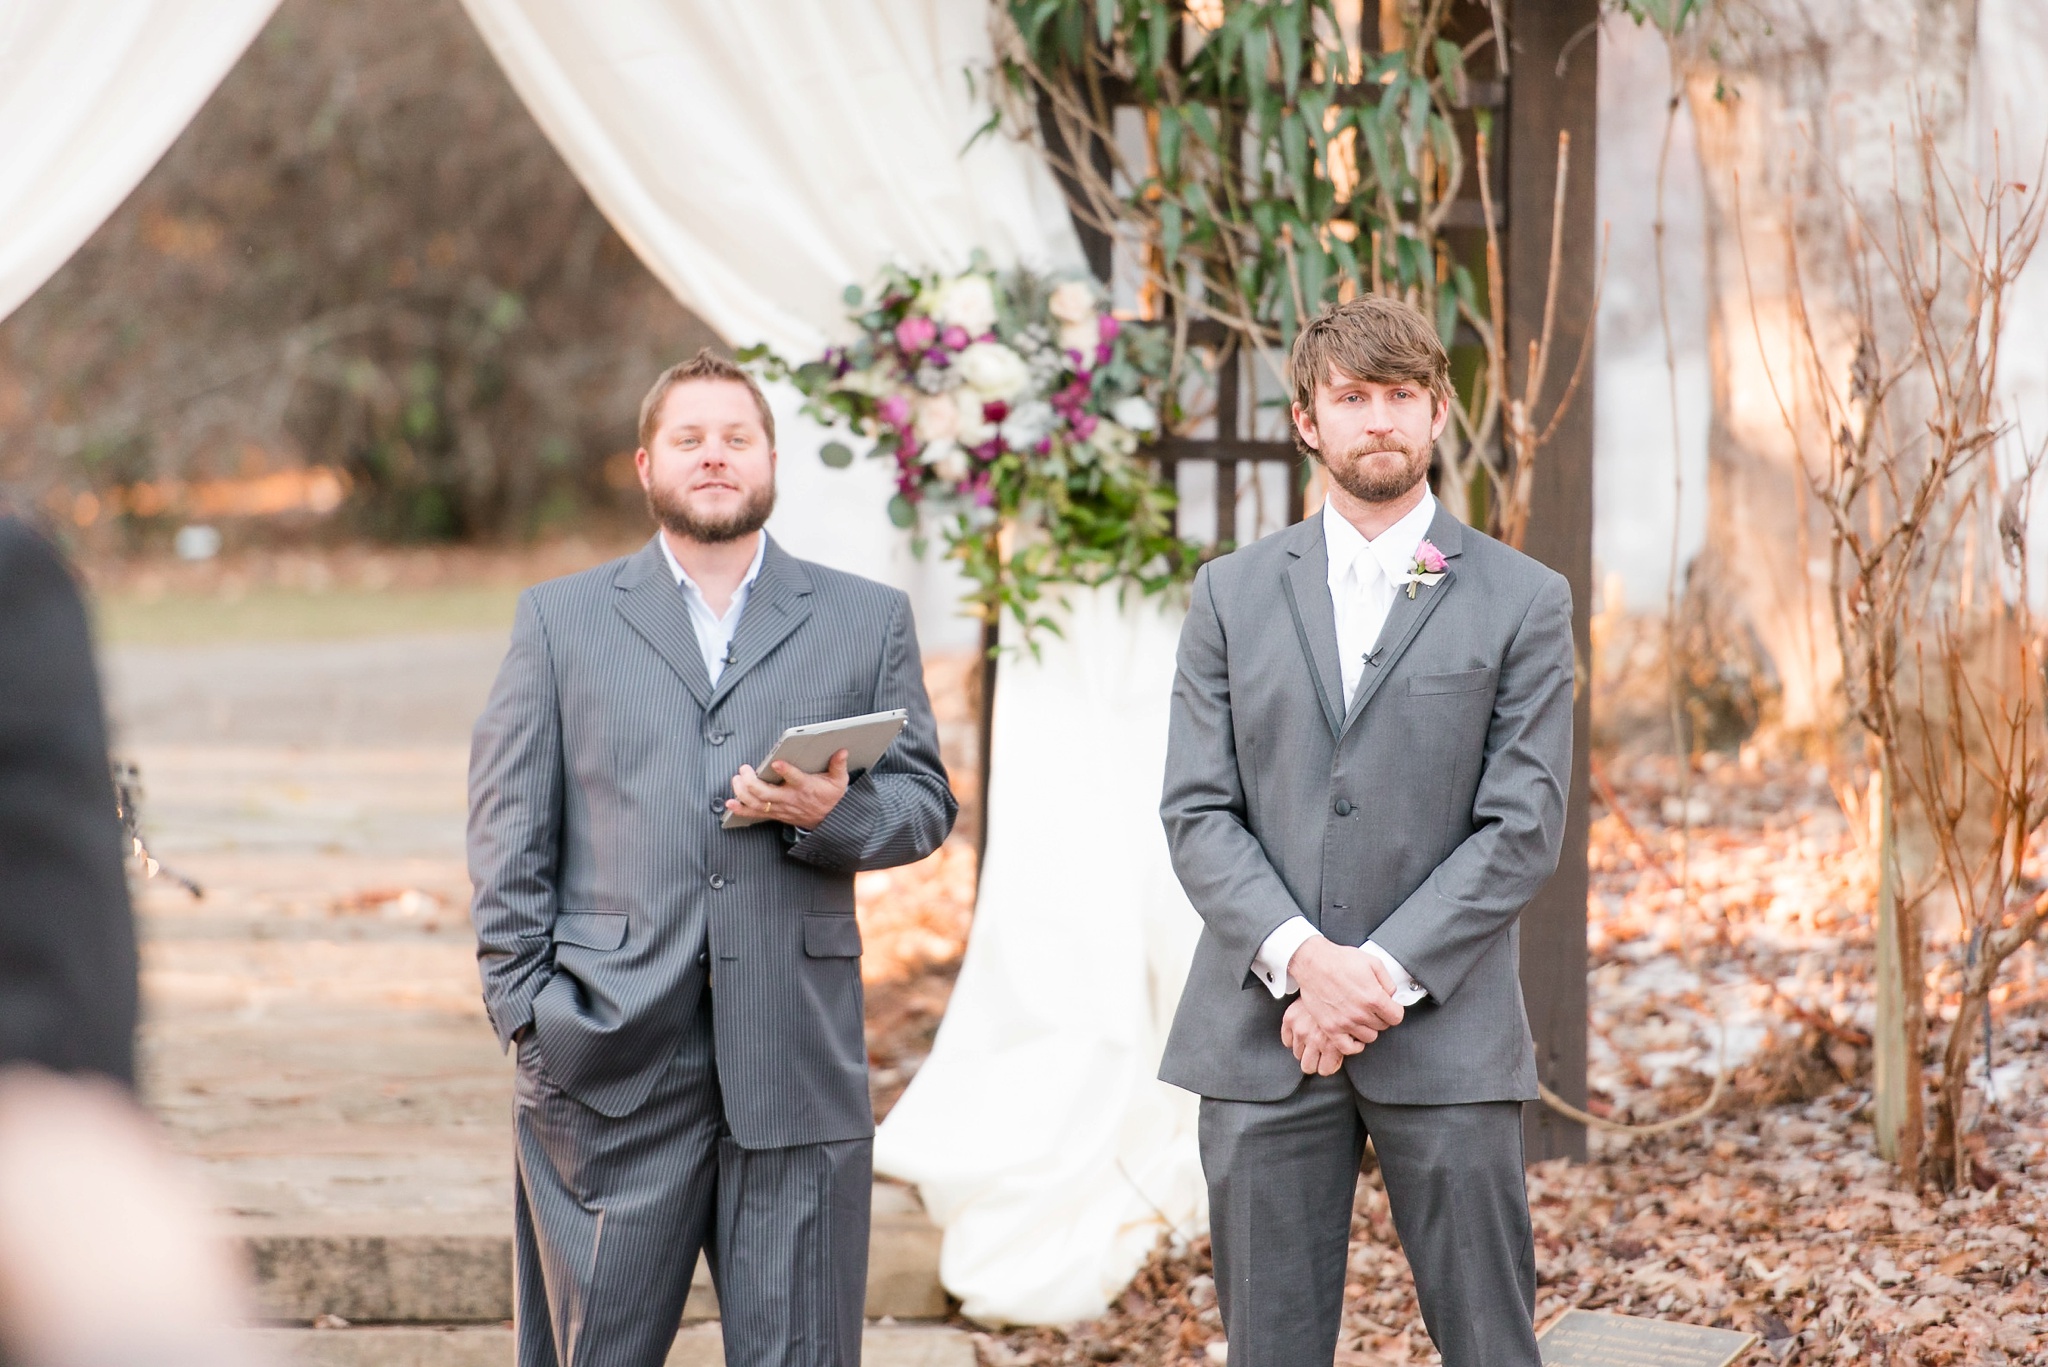 Snowy Winter Aldridge Gardens Wedding | Birmingham Alabama Wedding Photographers_0030.jpg